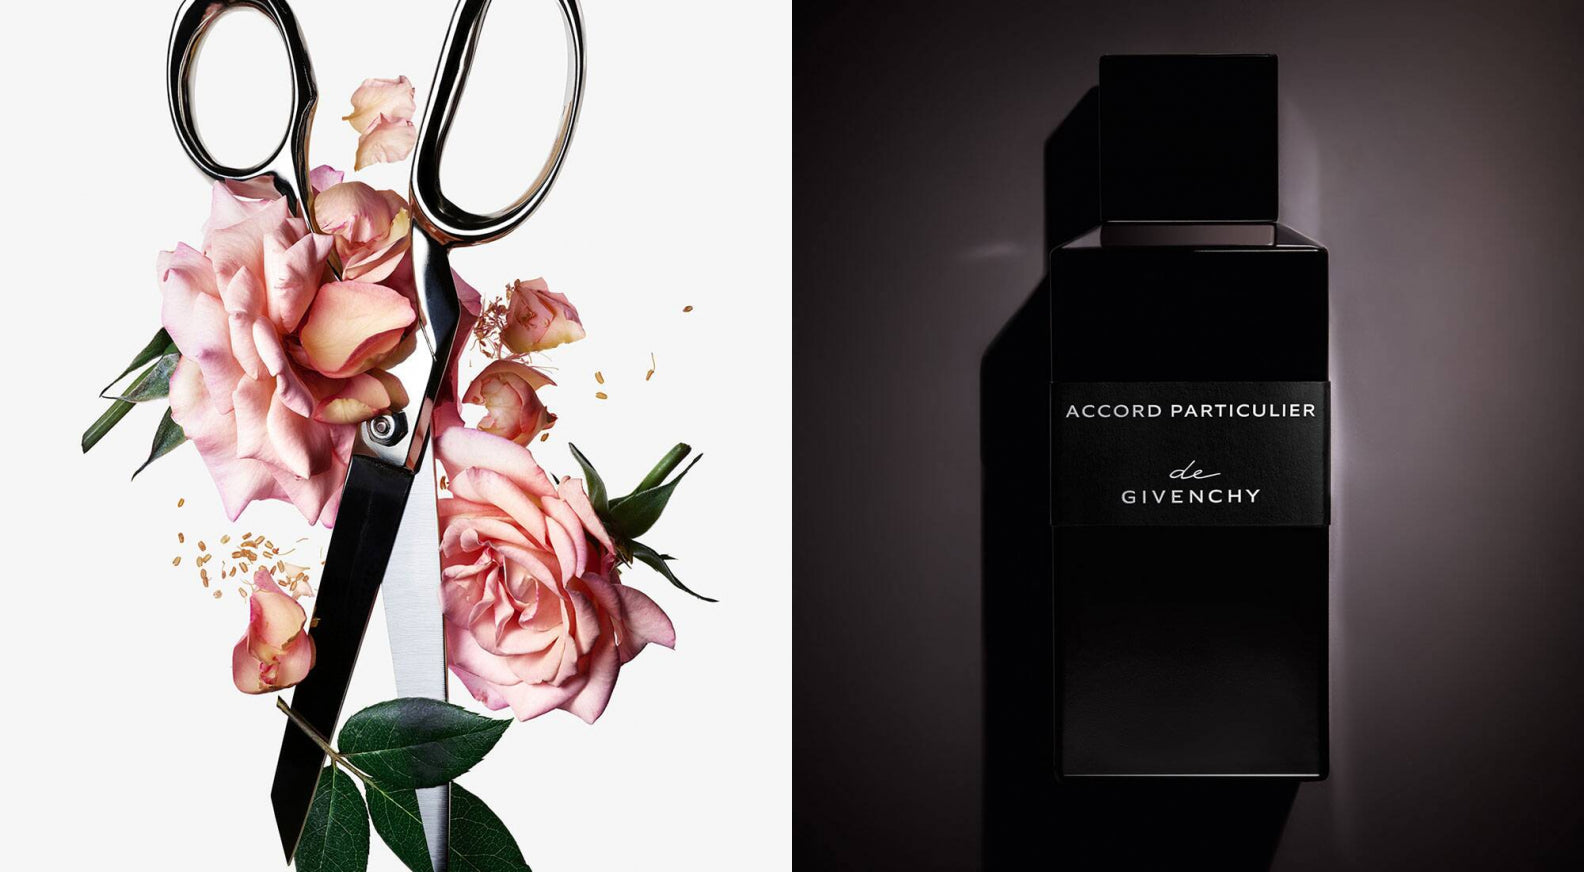 Givenchy Fine Fragrances For Men & Women